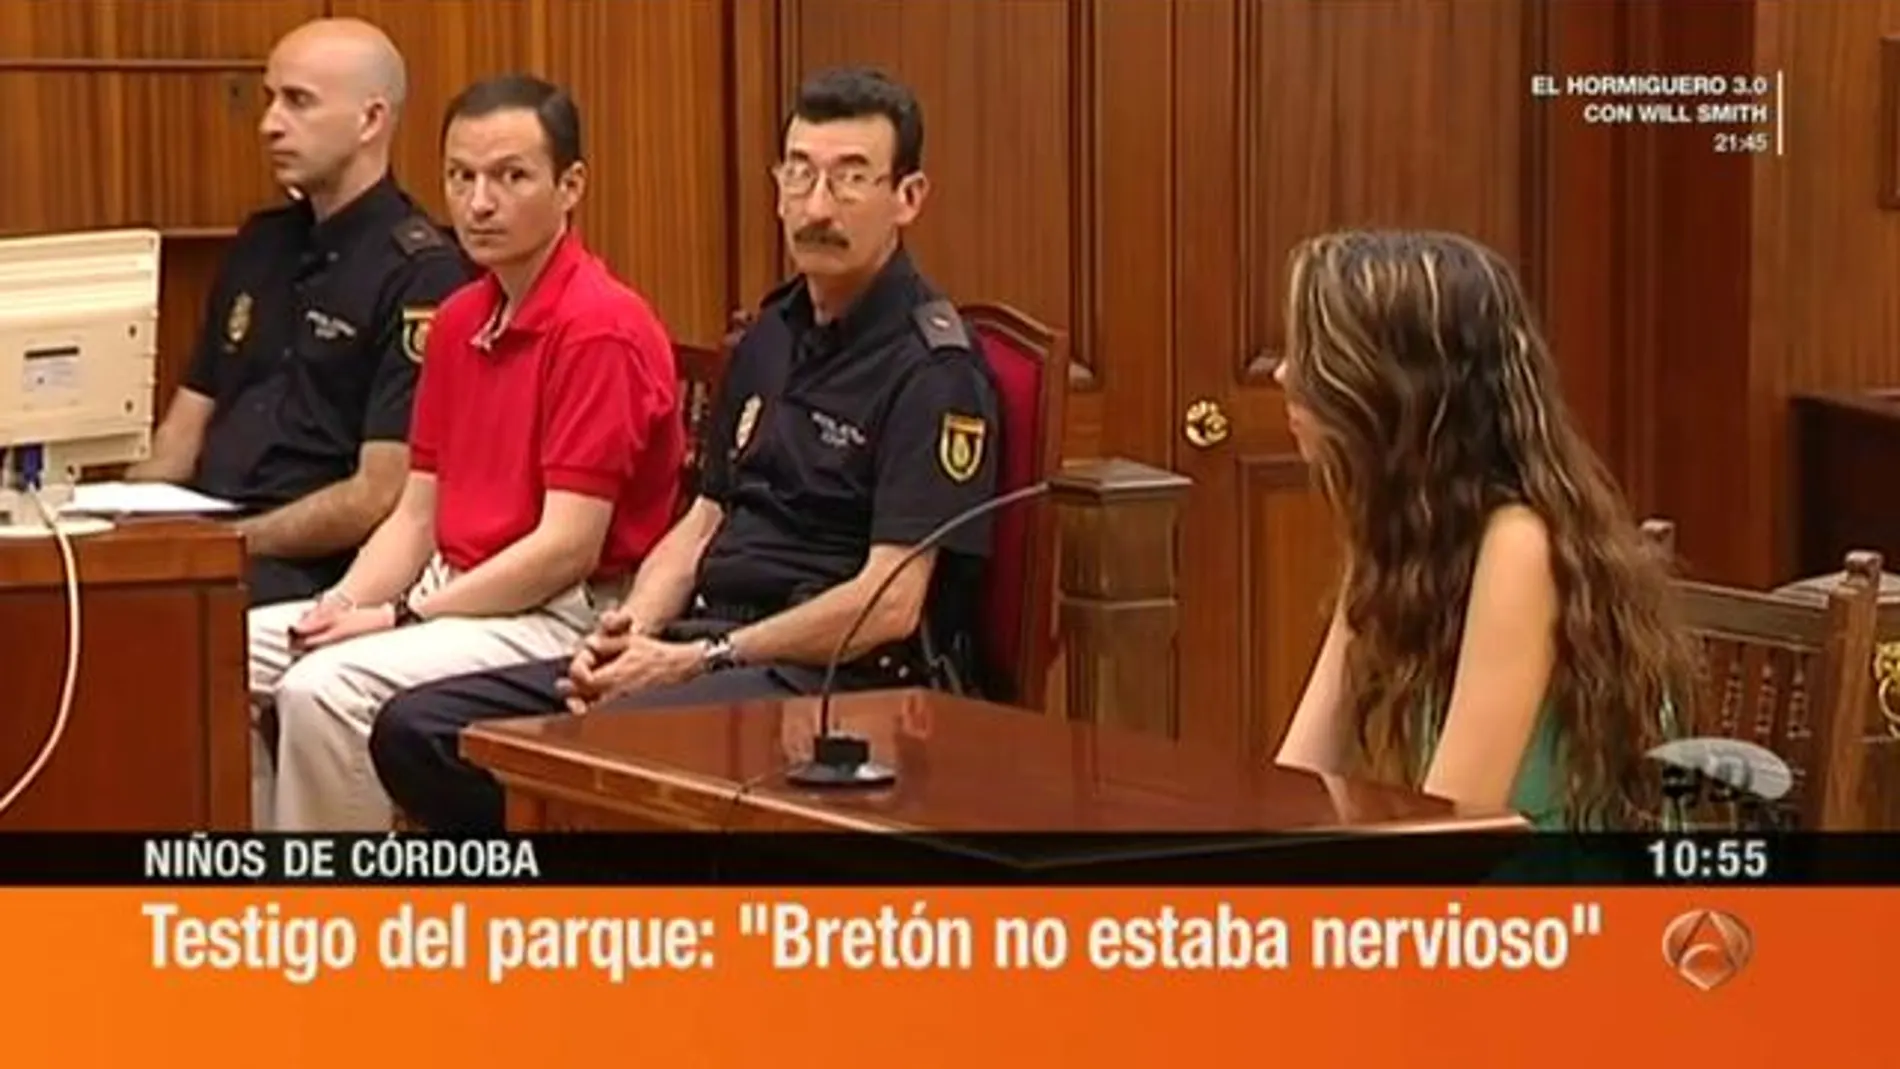 Declaración de los testigos que vieron a José Bretón en el parque: Bretón no estaba nervioso